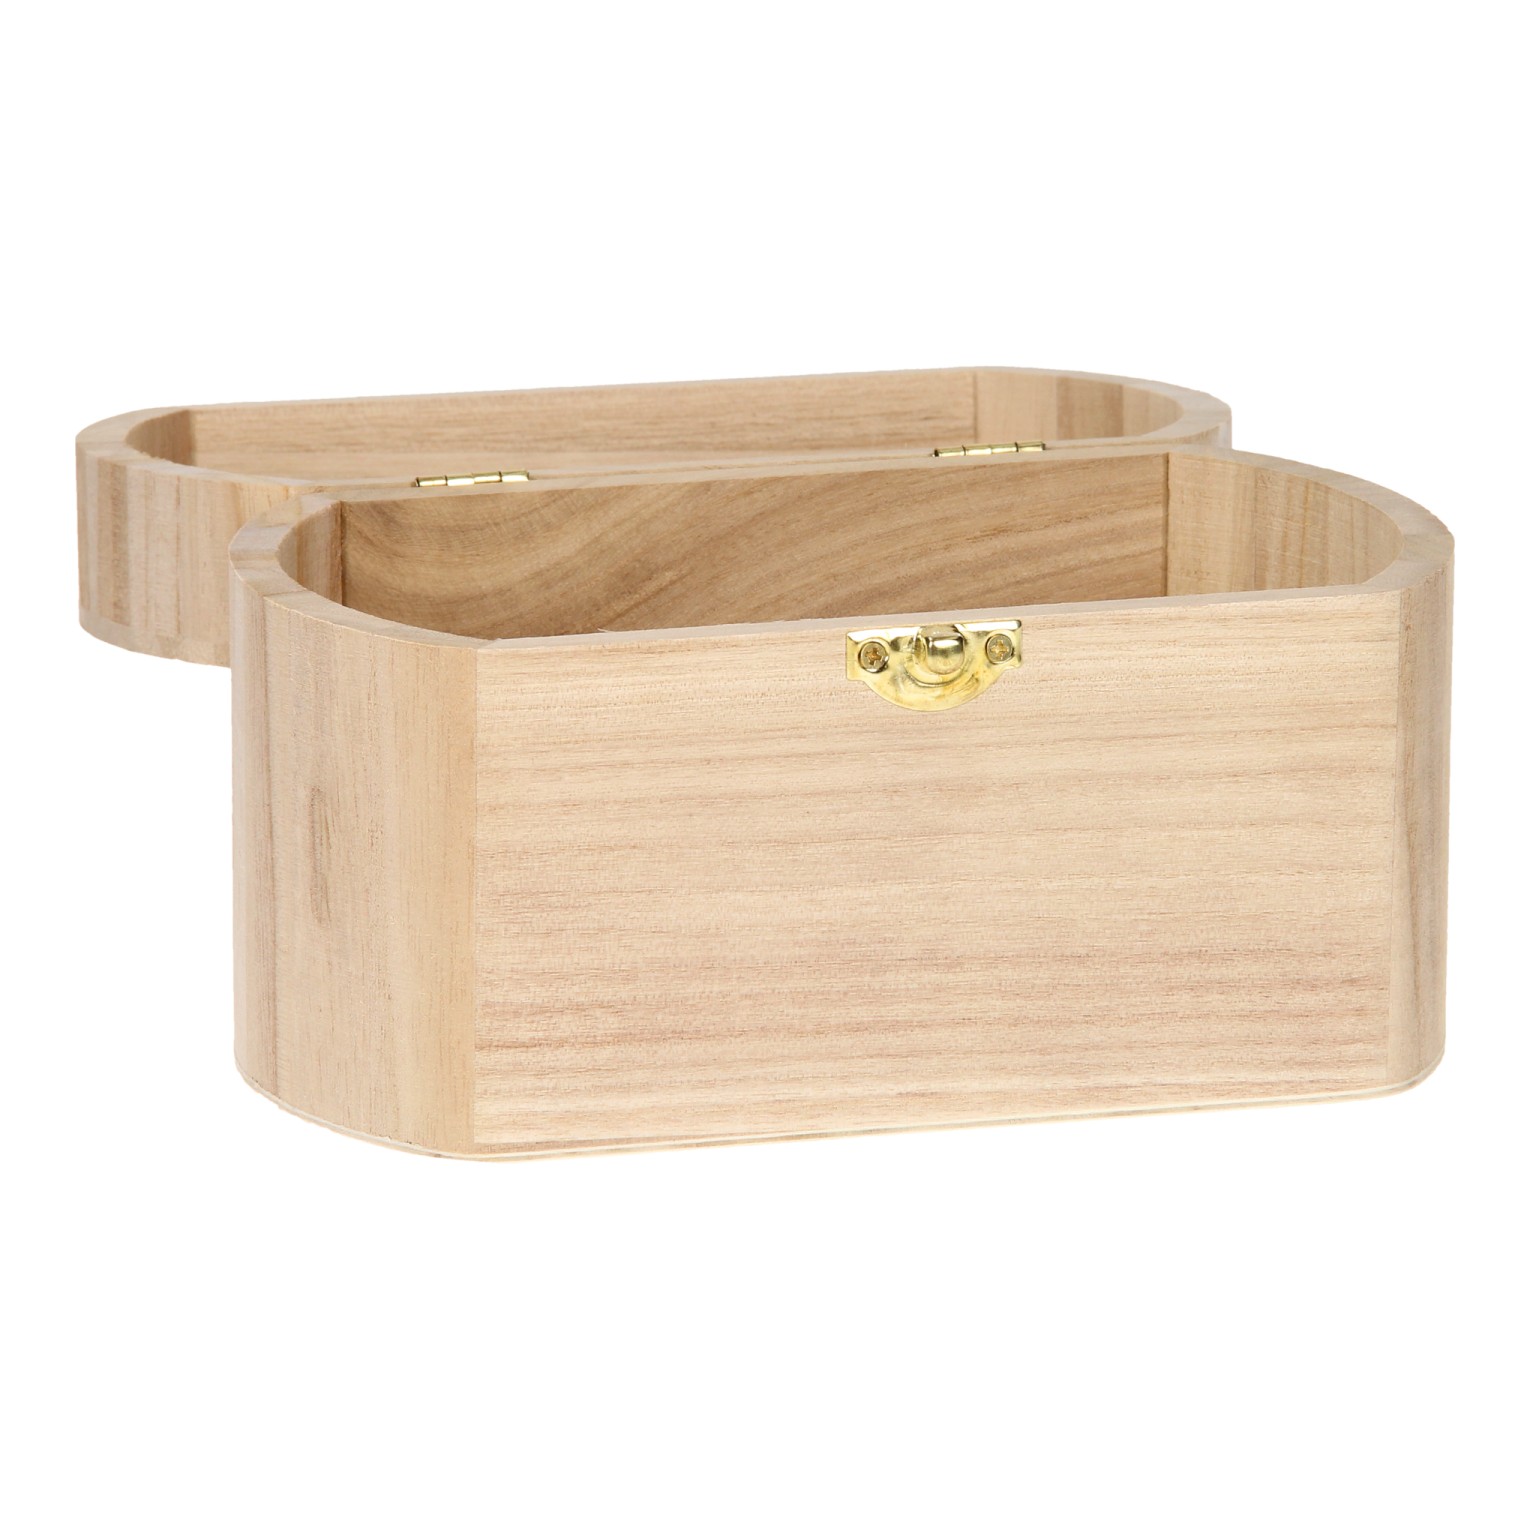 Décorez votre propre boîte ovale en bois